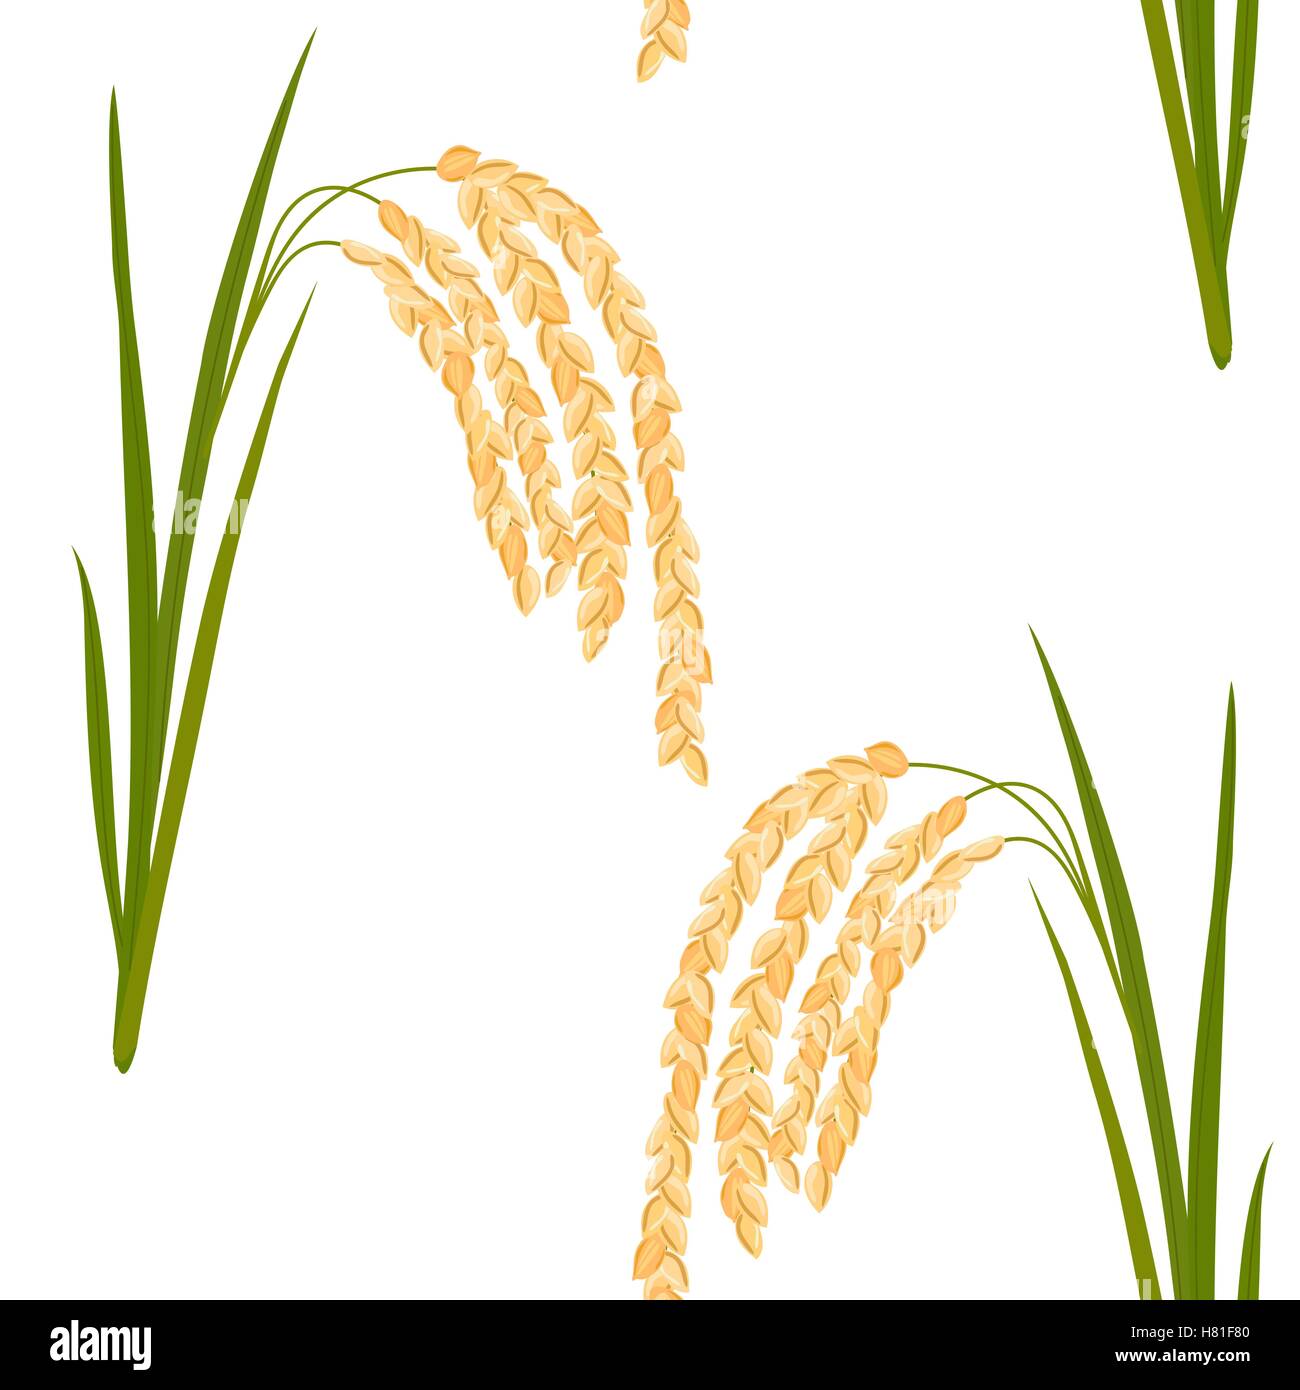 Modèle sans couture avec du riz. Les feuilles et les épillets de riz sur un fond blanc. Vector illustration. Eps 10. Illustration de Vecteur